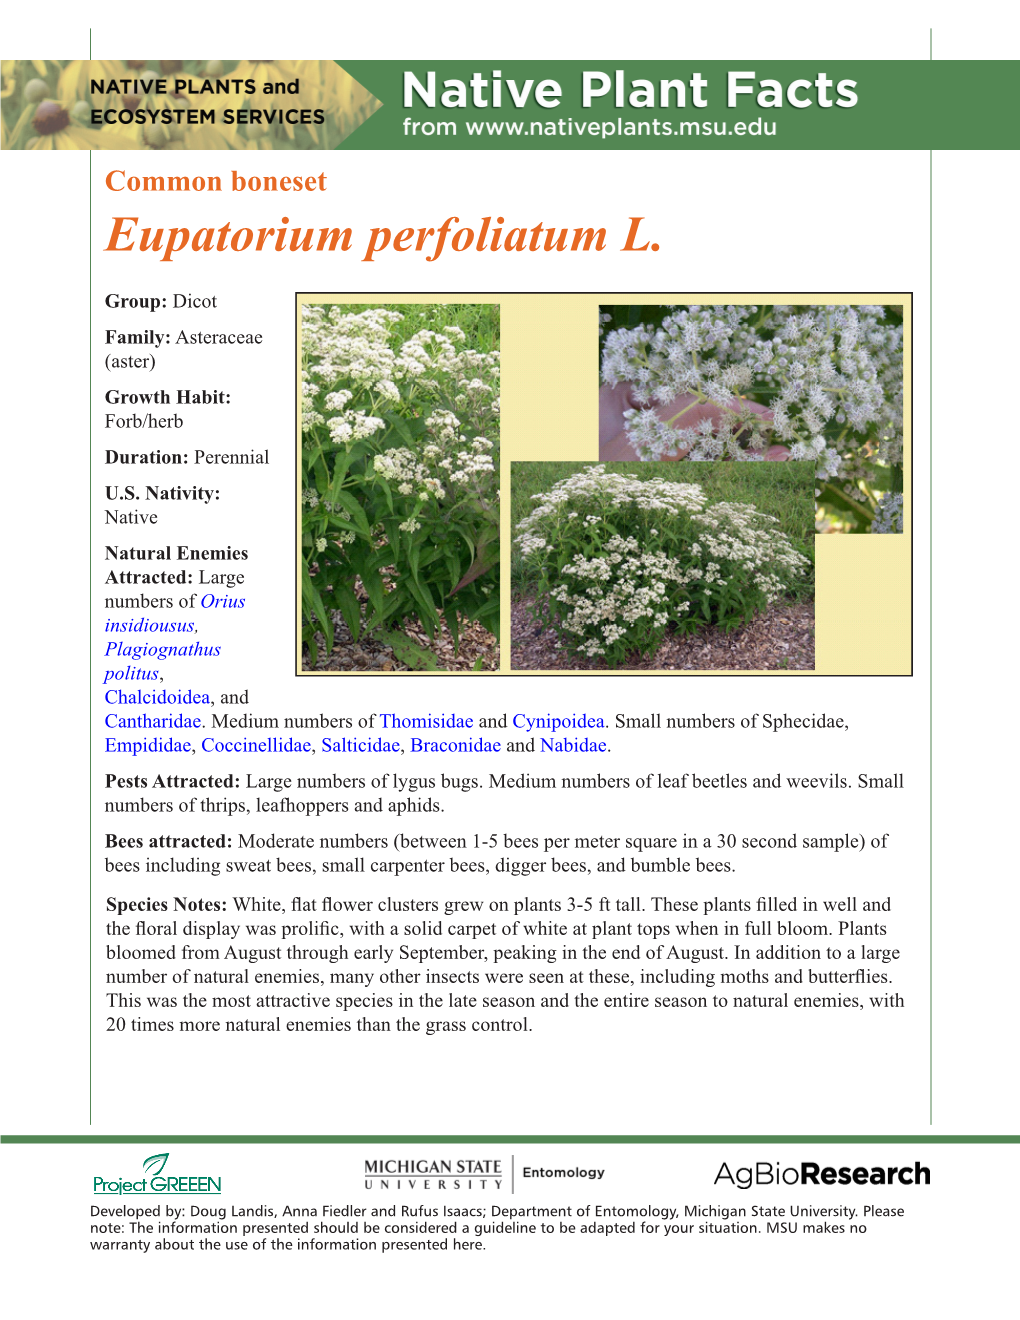 Eupatorium Perfoliatum L